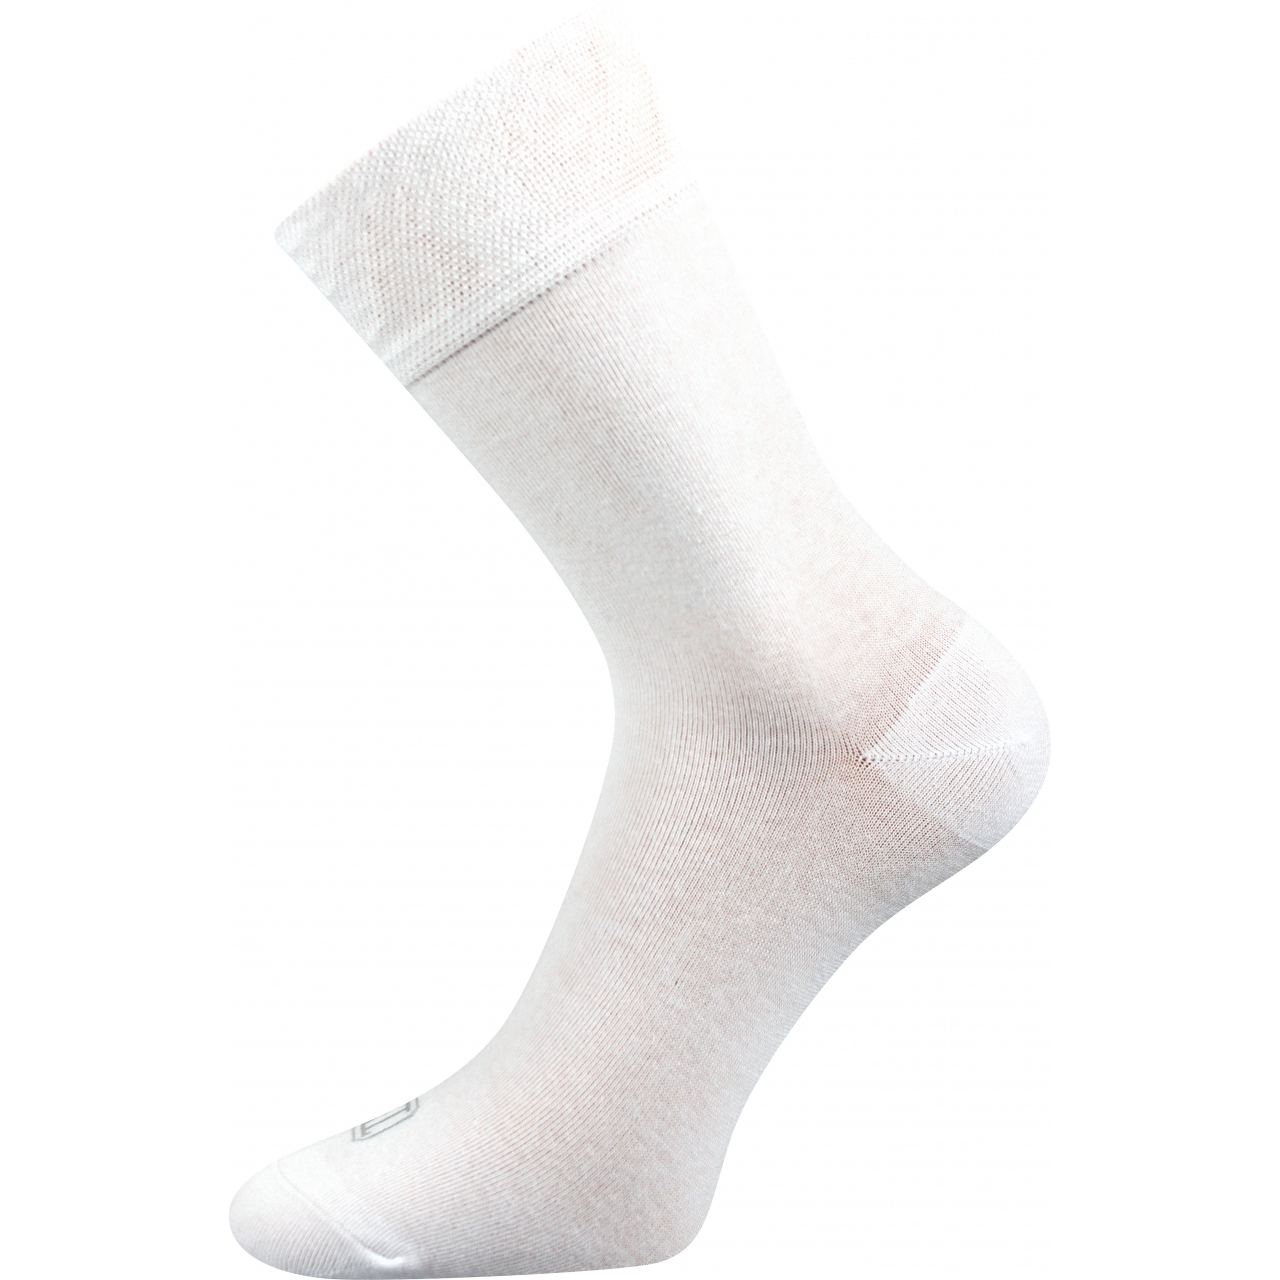 Ponožky unisex klasické Lonka Eli - bílé, 43-46